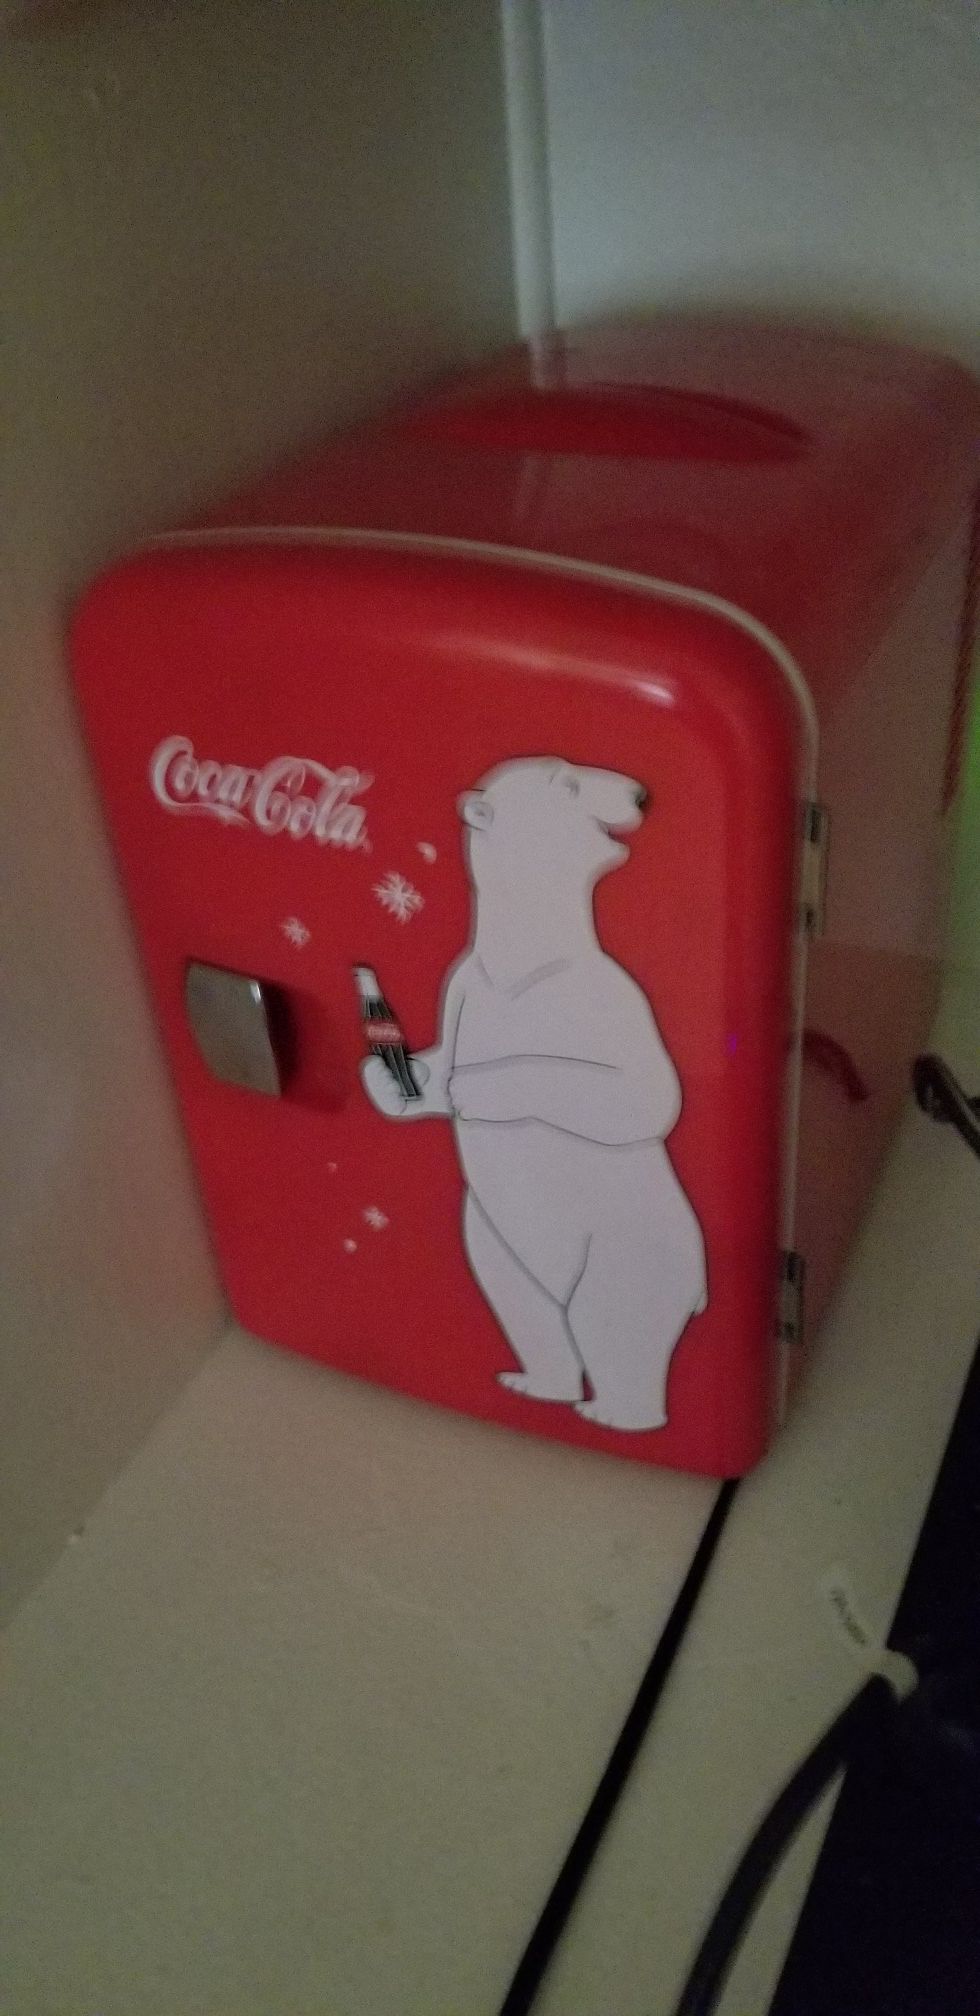 Coca-Cola mini fridge